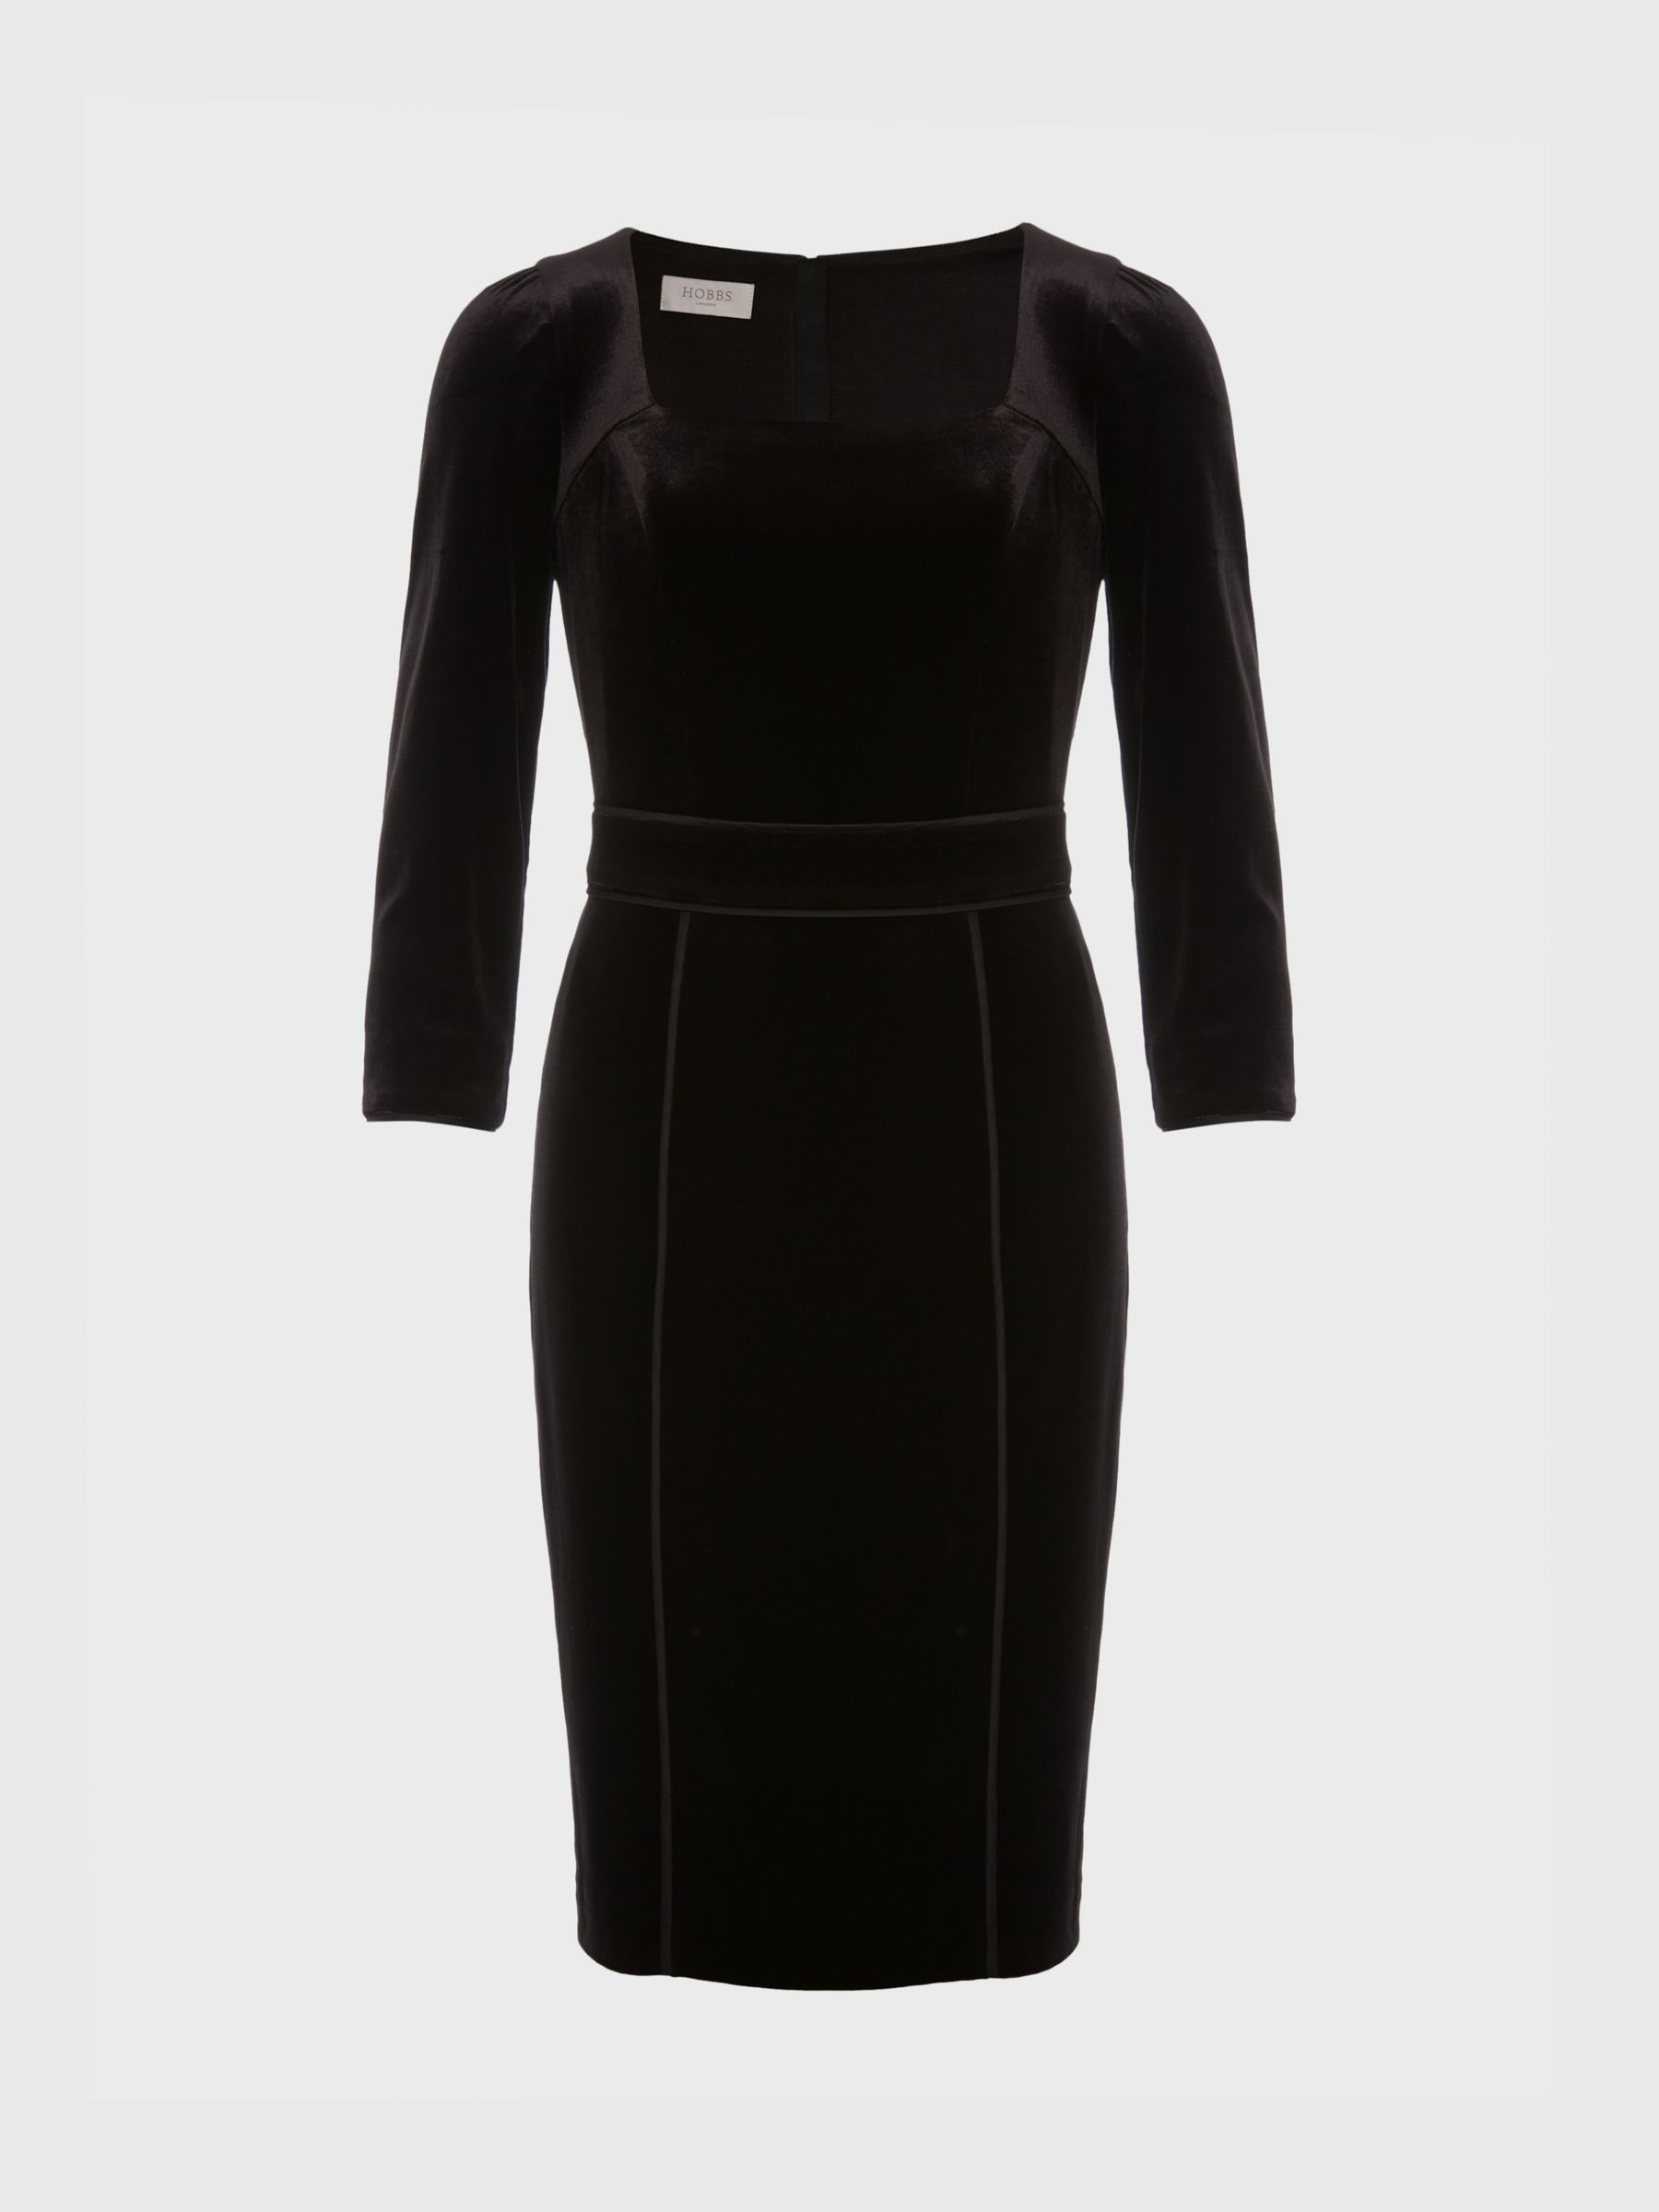 Hobbs Josie Velvet Mini Dress, Black at John Lewis & Partners